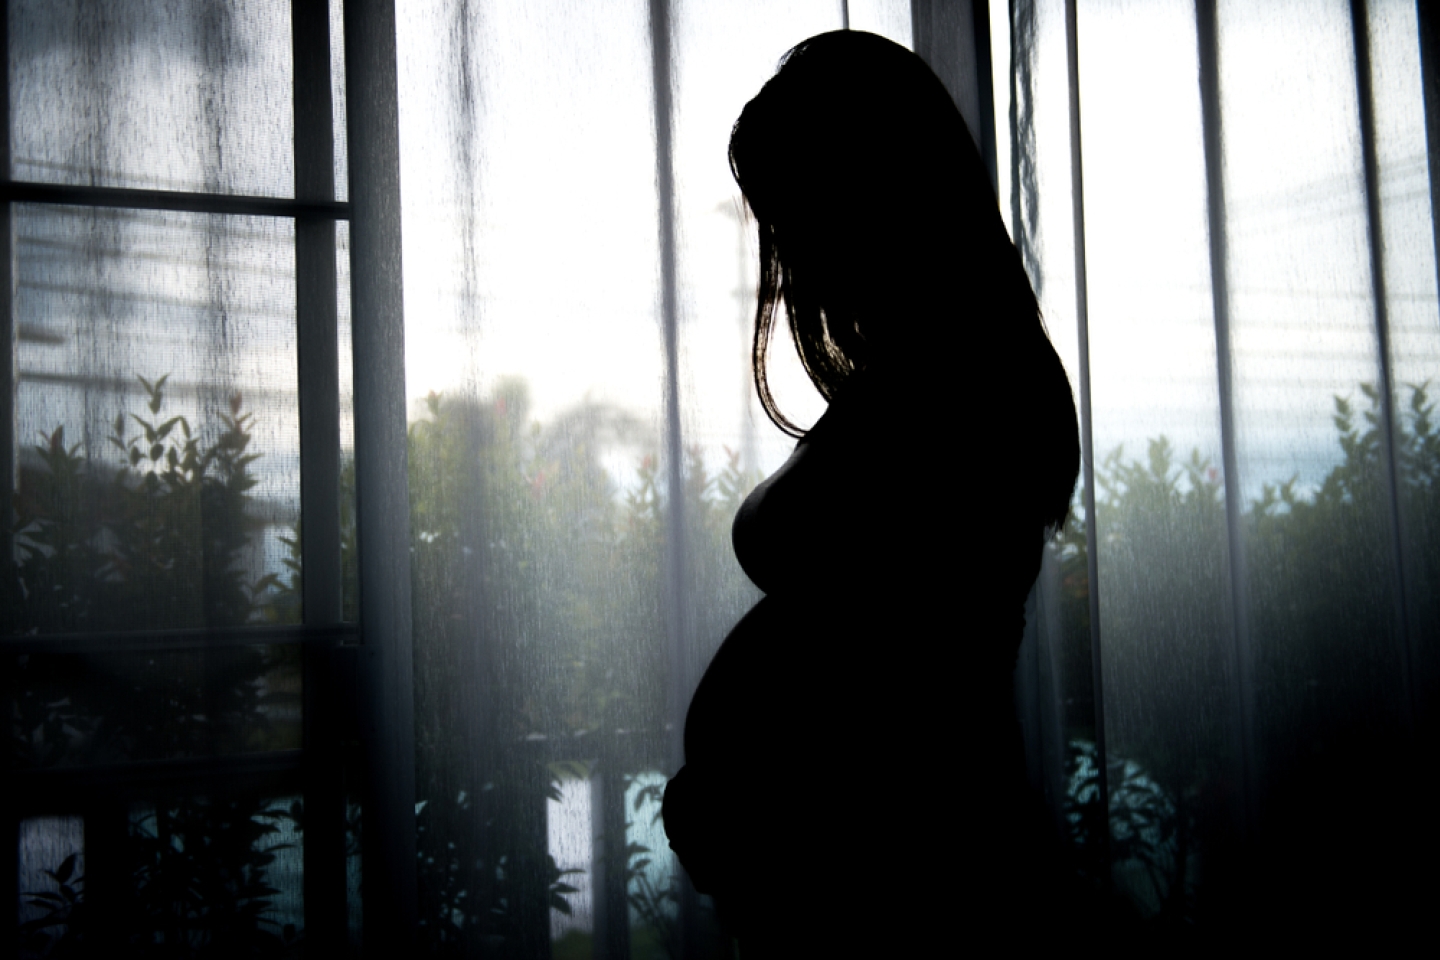 silhouette pregnancy women standing in a window